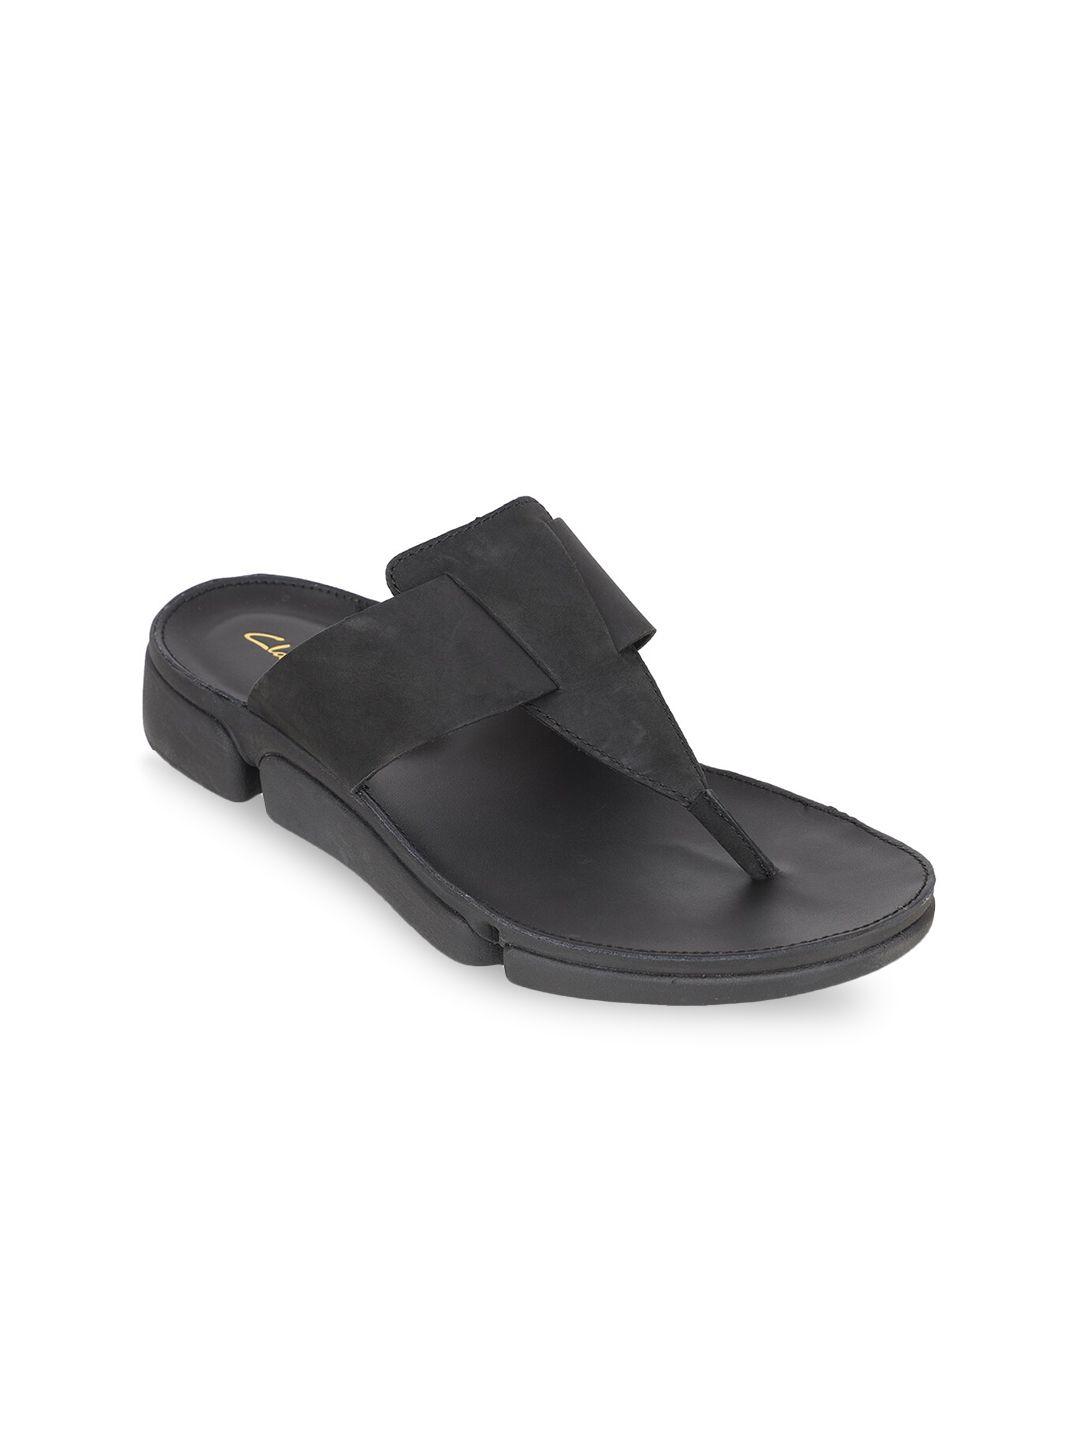 clarks men black suede comfort sandals